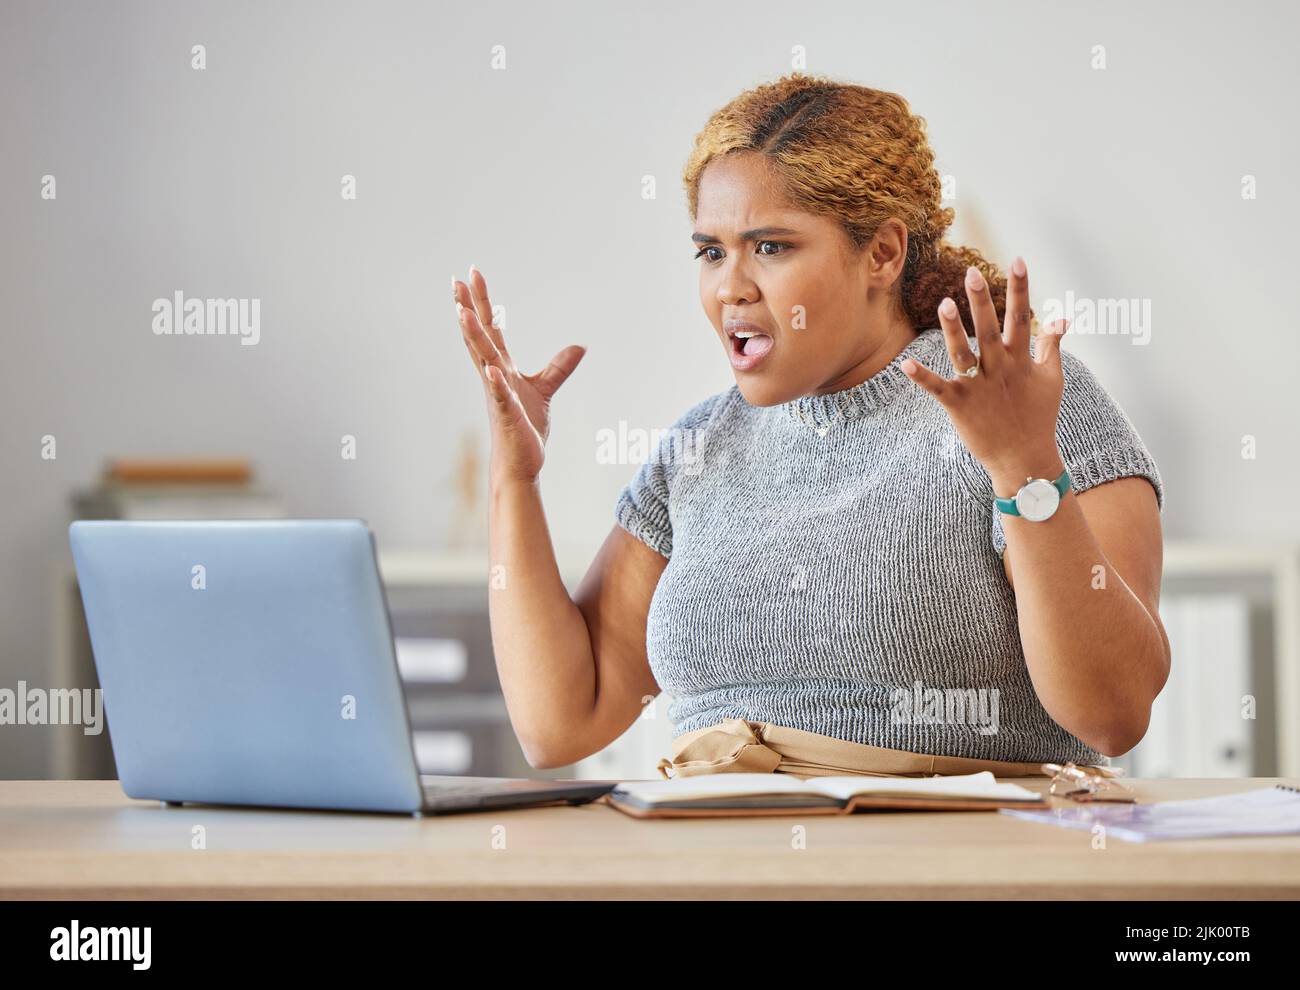 Überrascht, schockiert und verärgert Geschäftsfrau, Bloggerin oder Unternehmerin zeigt frustrierte Handbewegung. Das Gesicht einer unglücklichen und verärgerten afrikanischen Frau Stockfoto